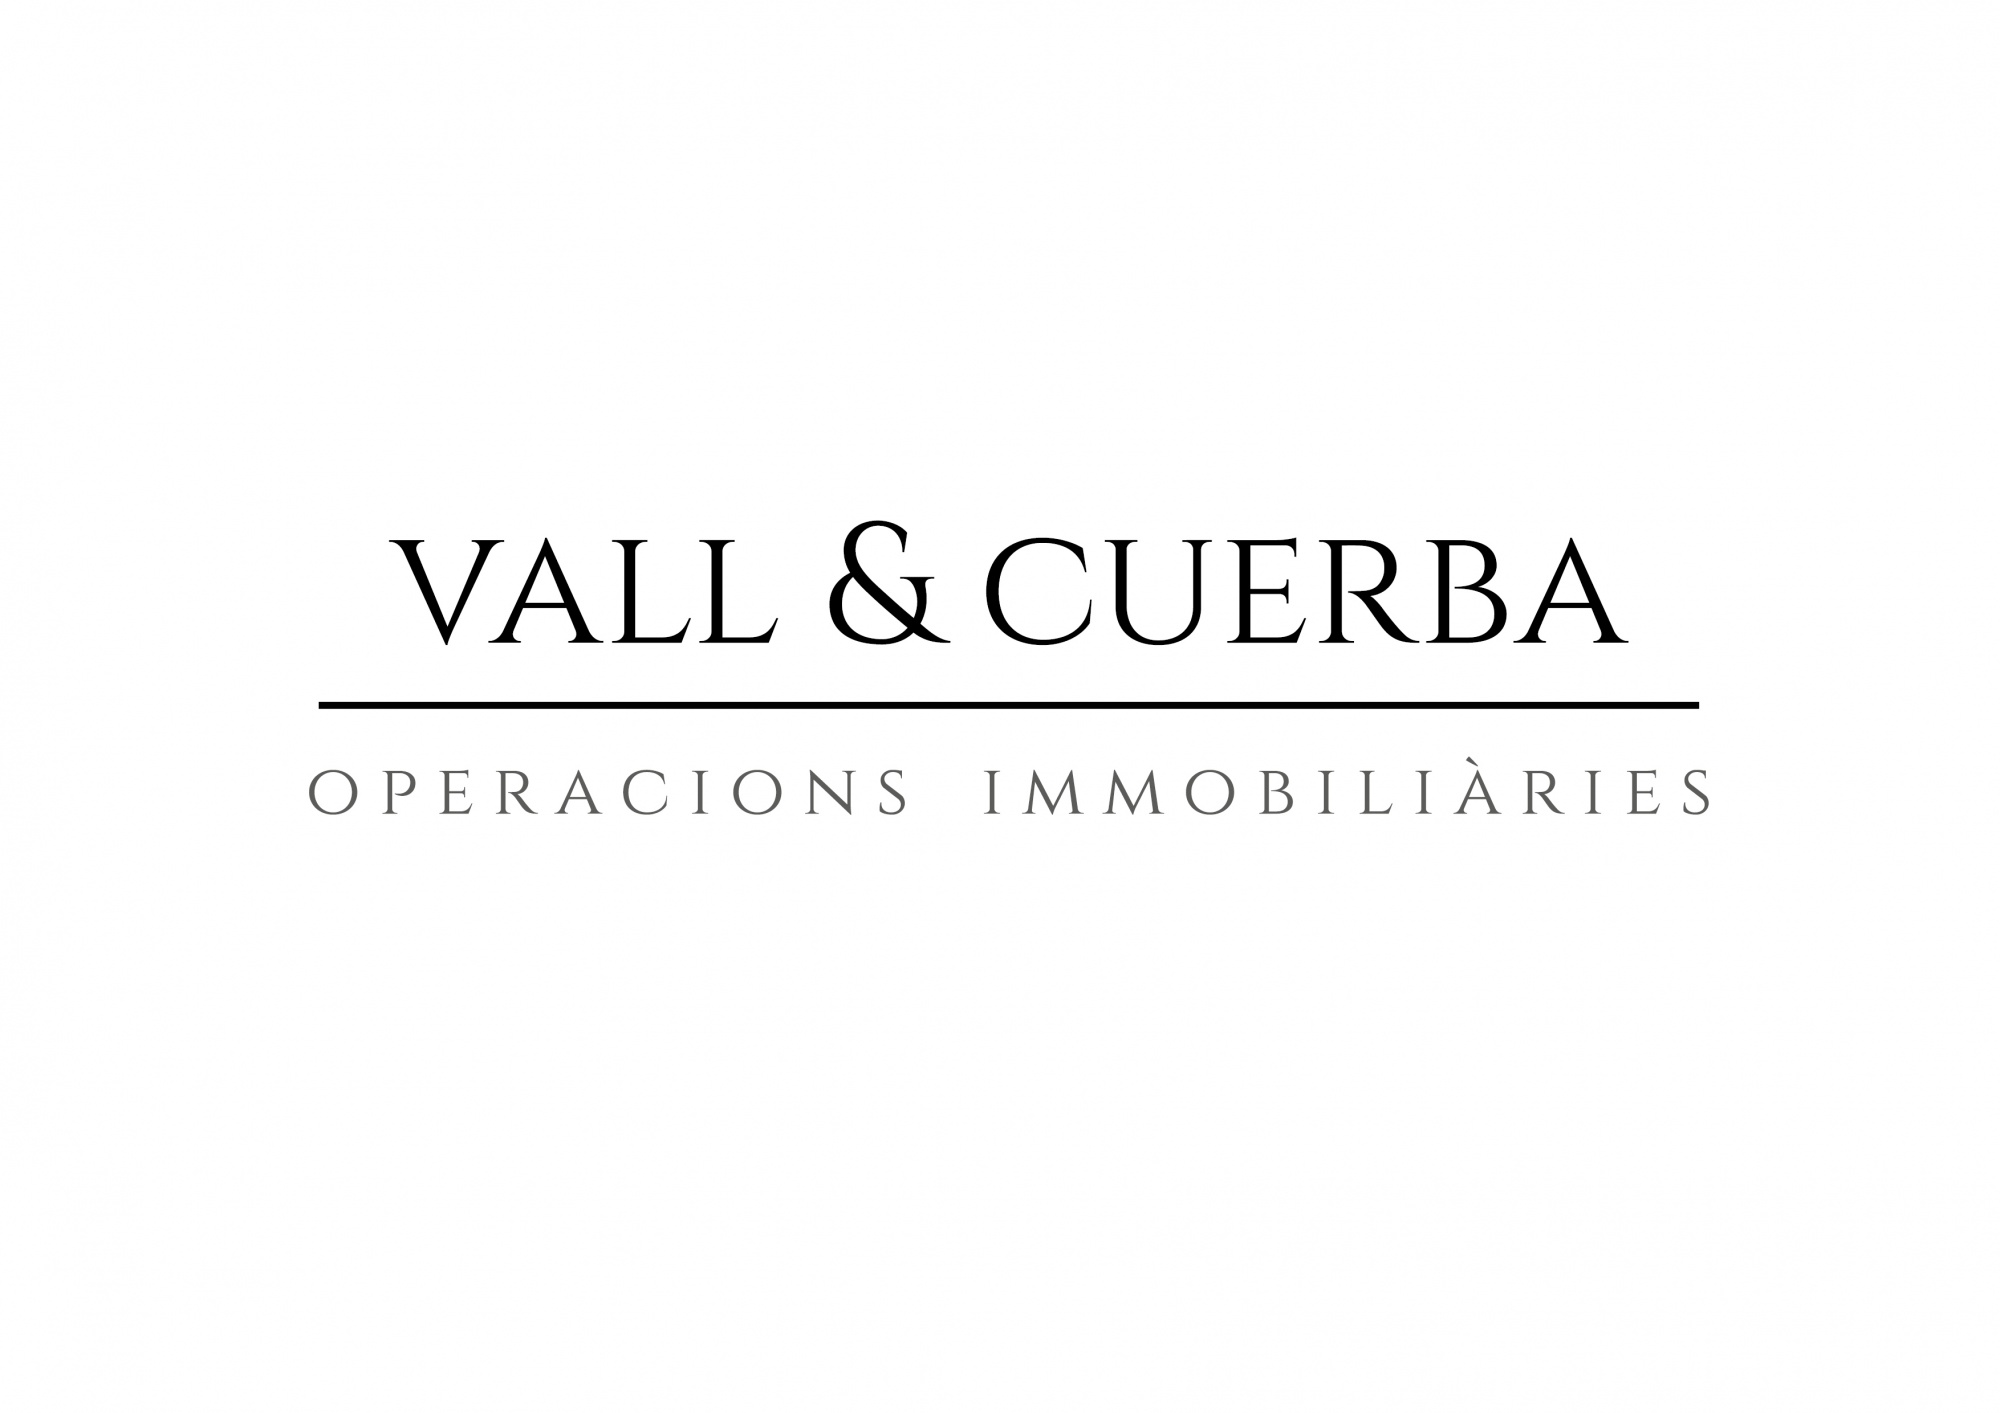 Vall & Cuerba